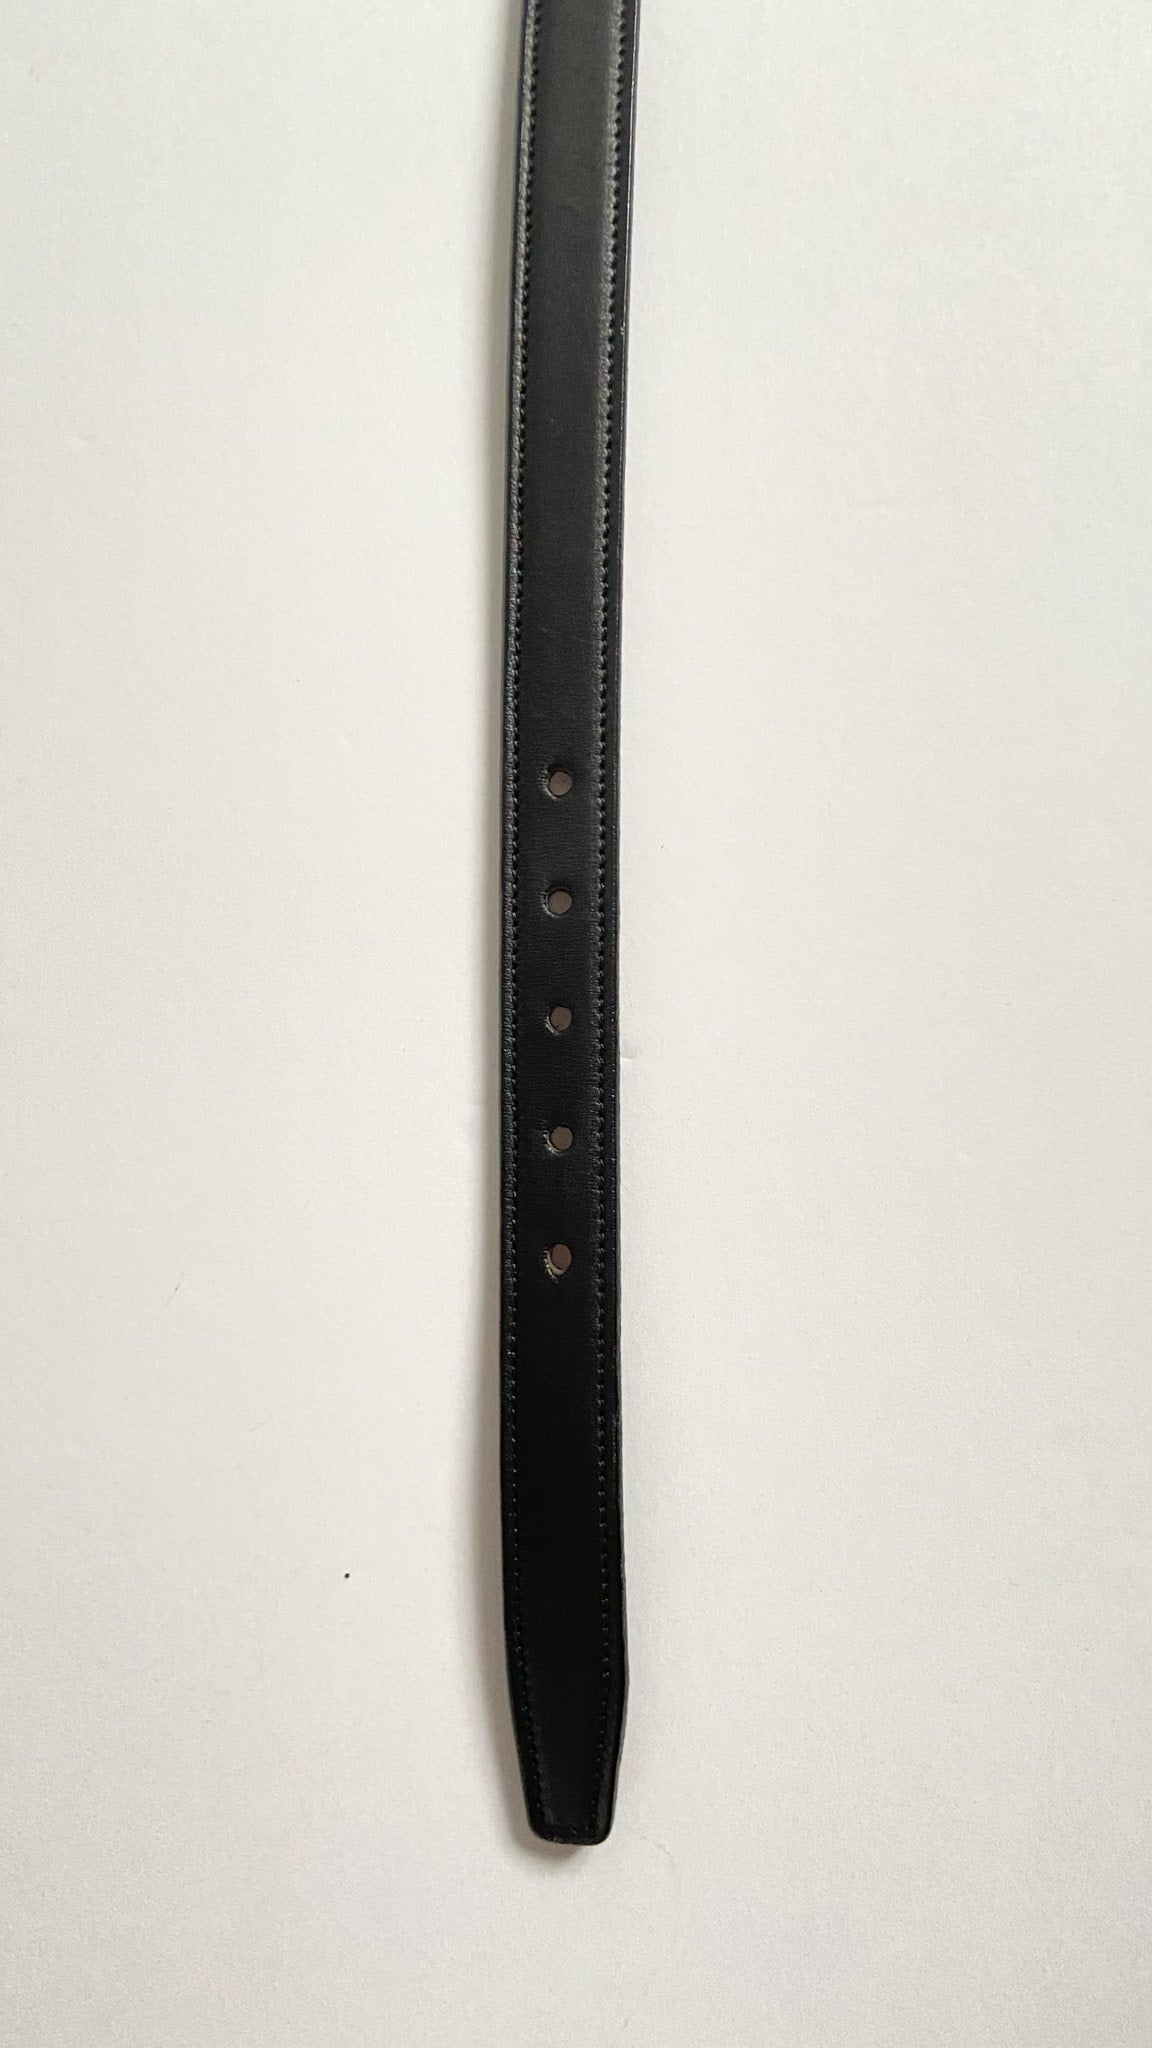 Tory Leather Raised Belt - Black - 36"